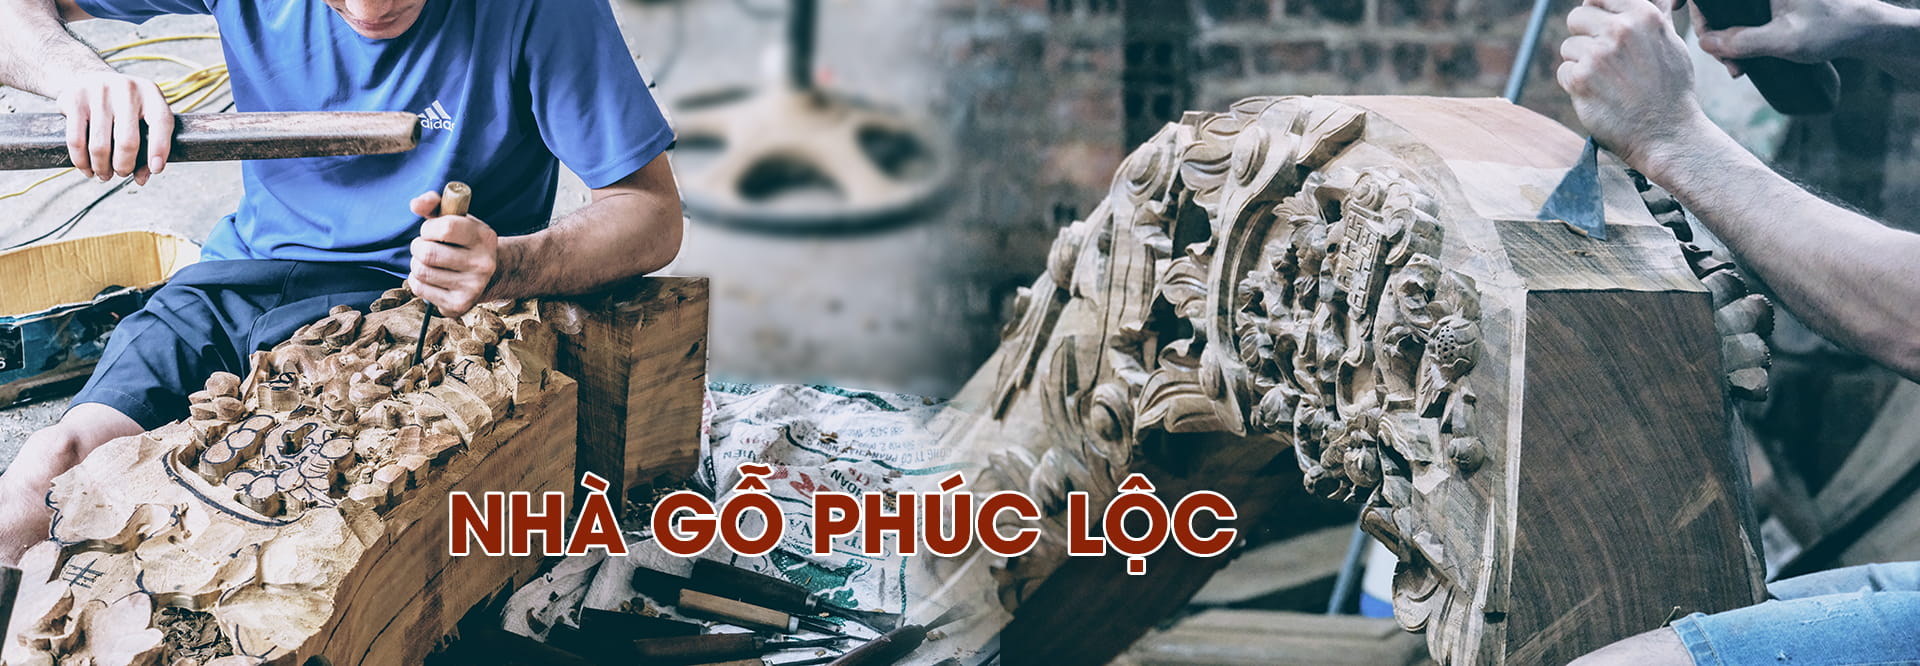 Banner Nha Go Phuc Loc 2021-2-3